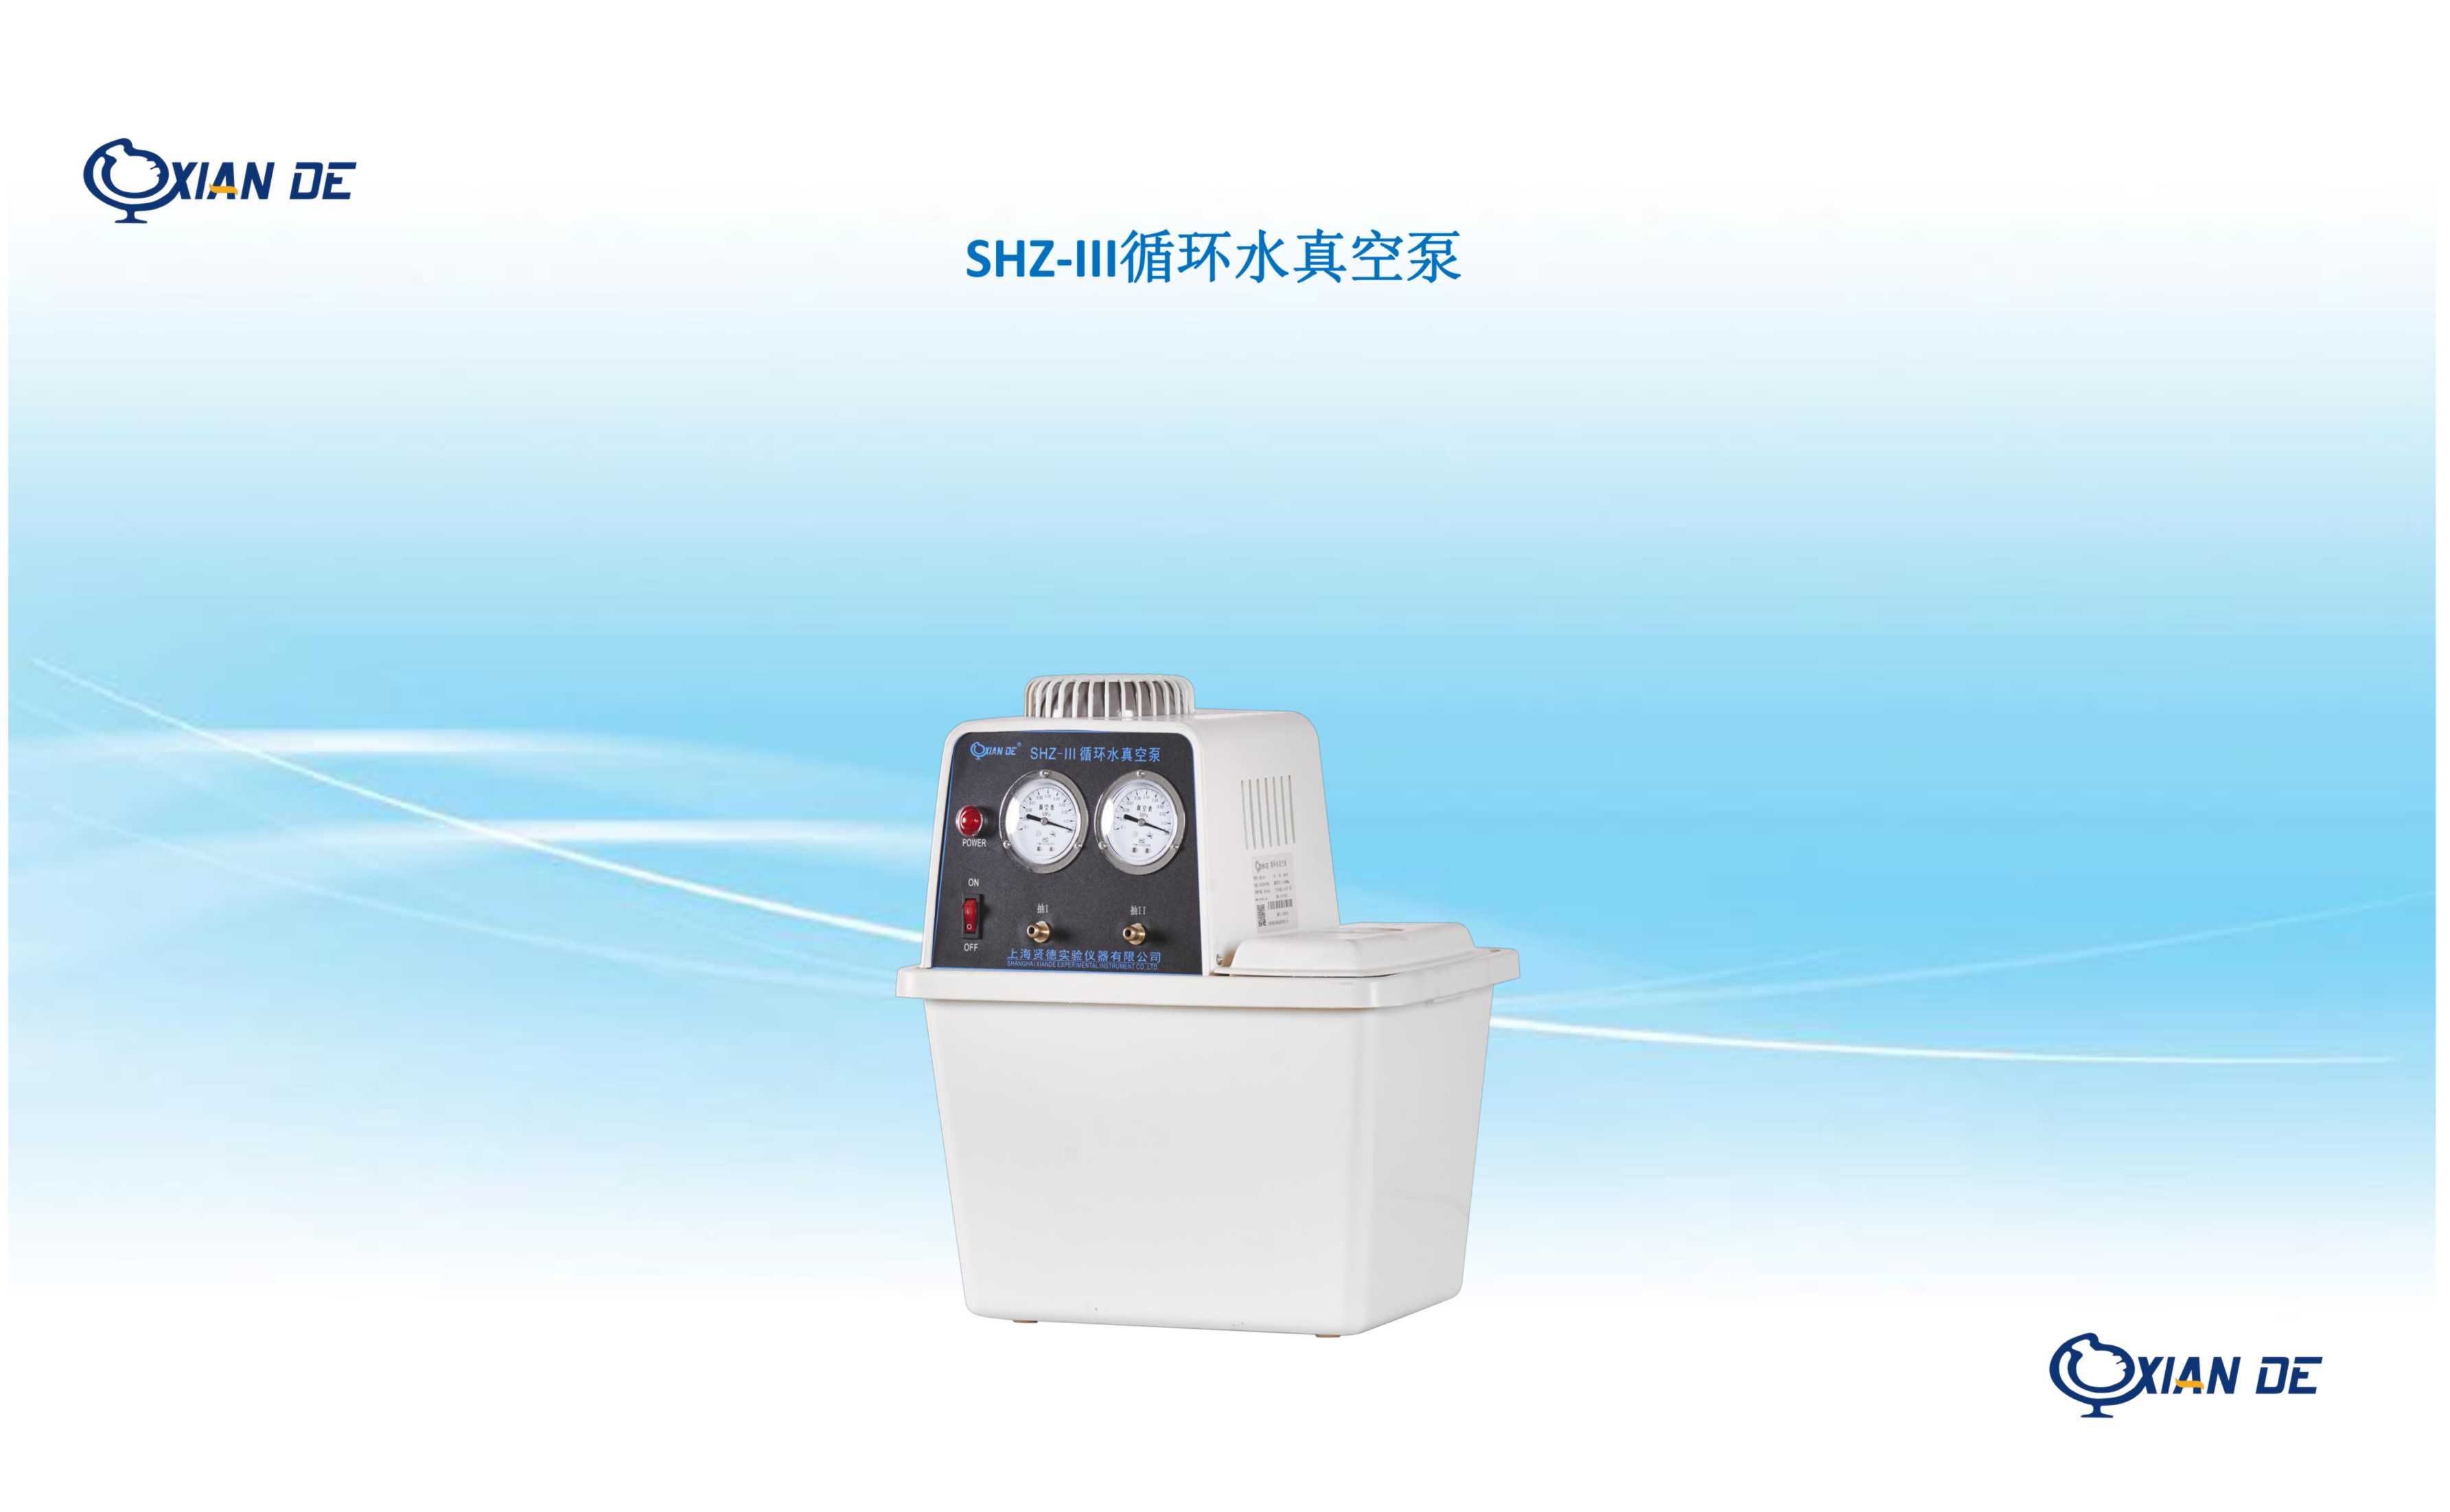 上海贤德xiandesy-3000A 水（油）浴两用旋转蒸发器.原SY-3000A旋转蒸发仪